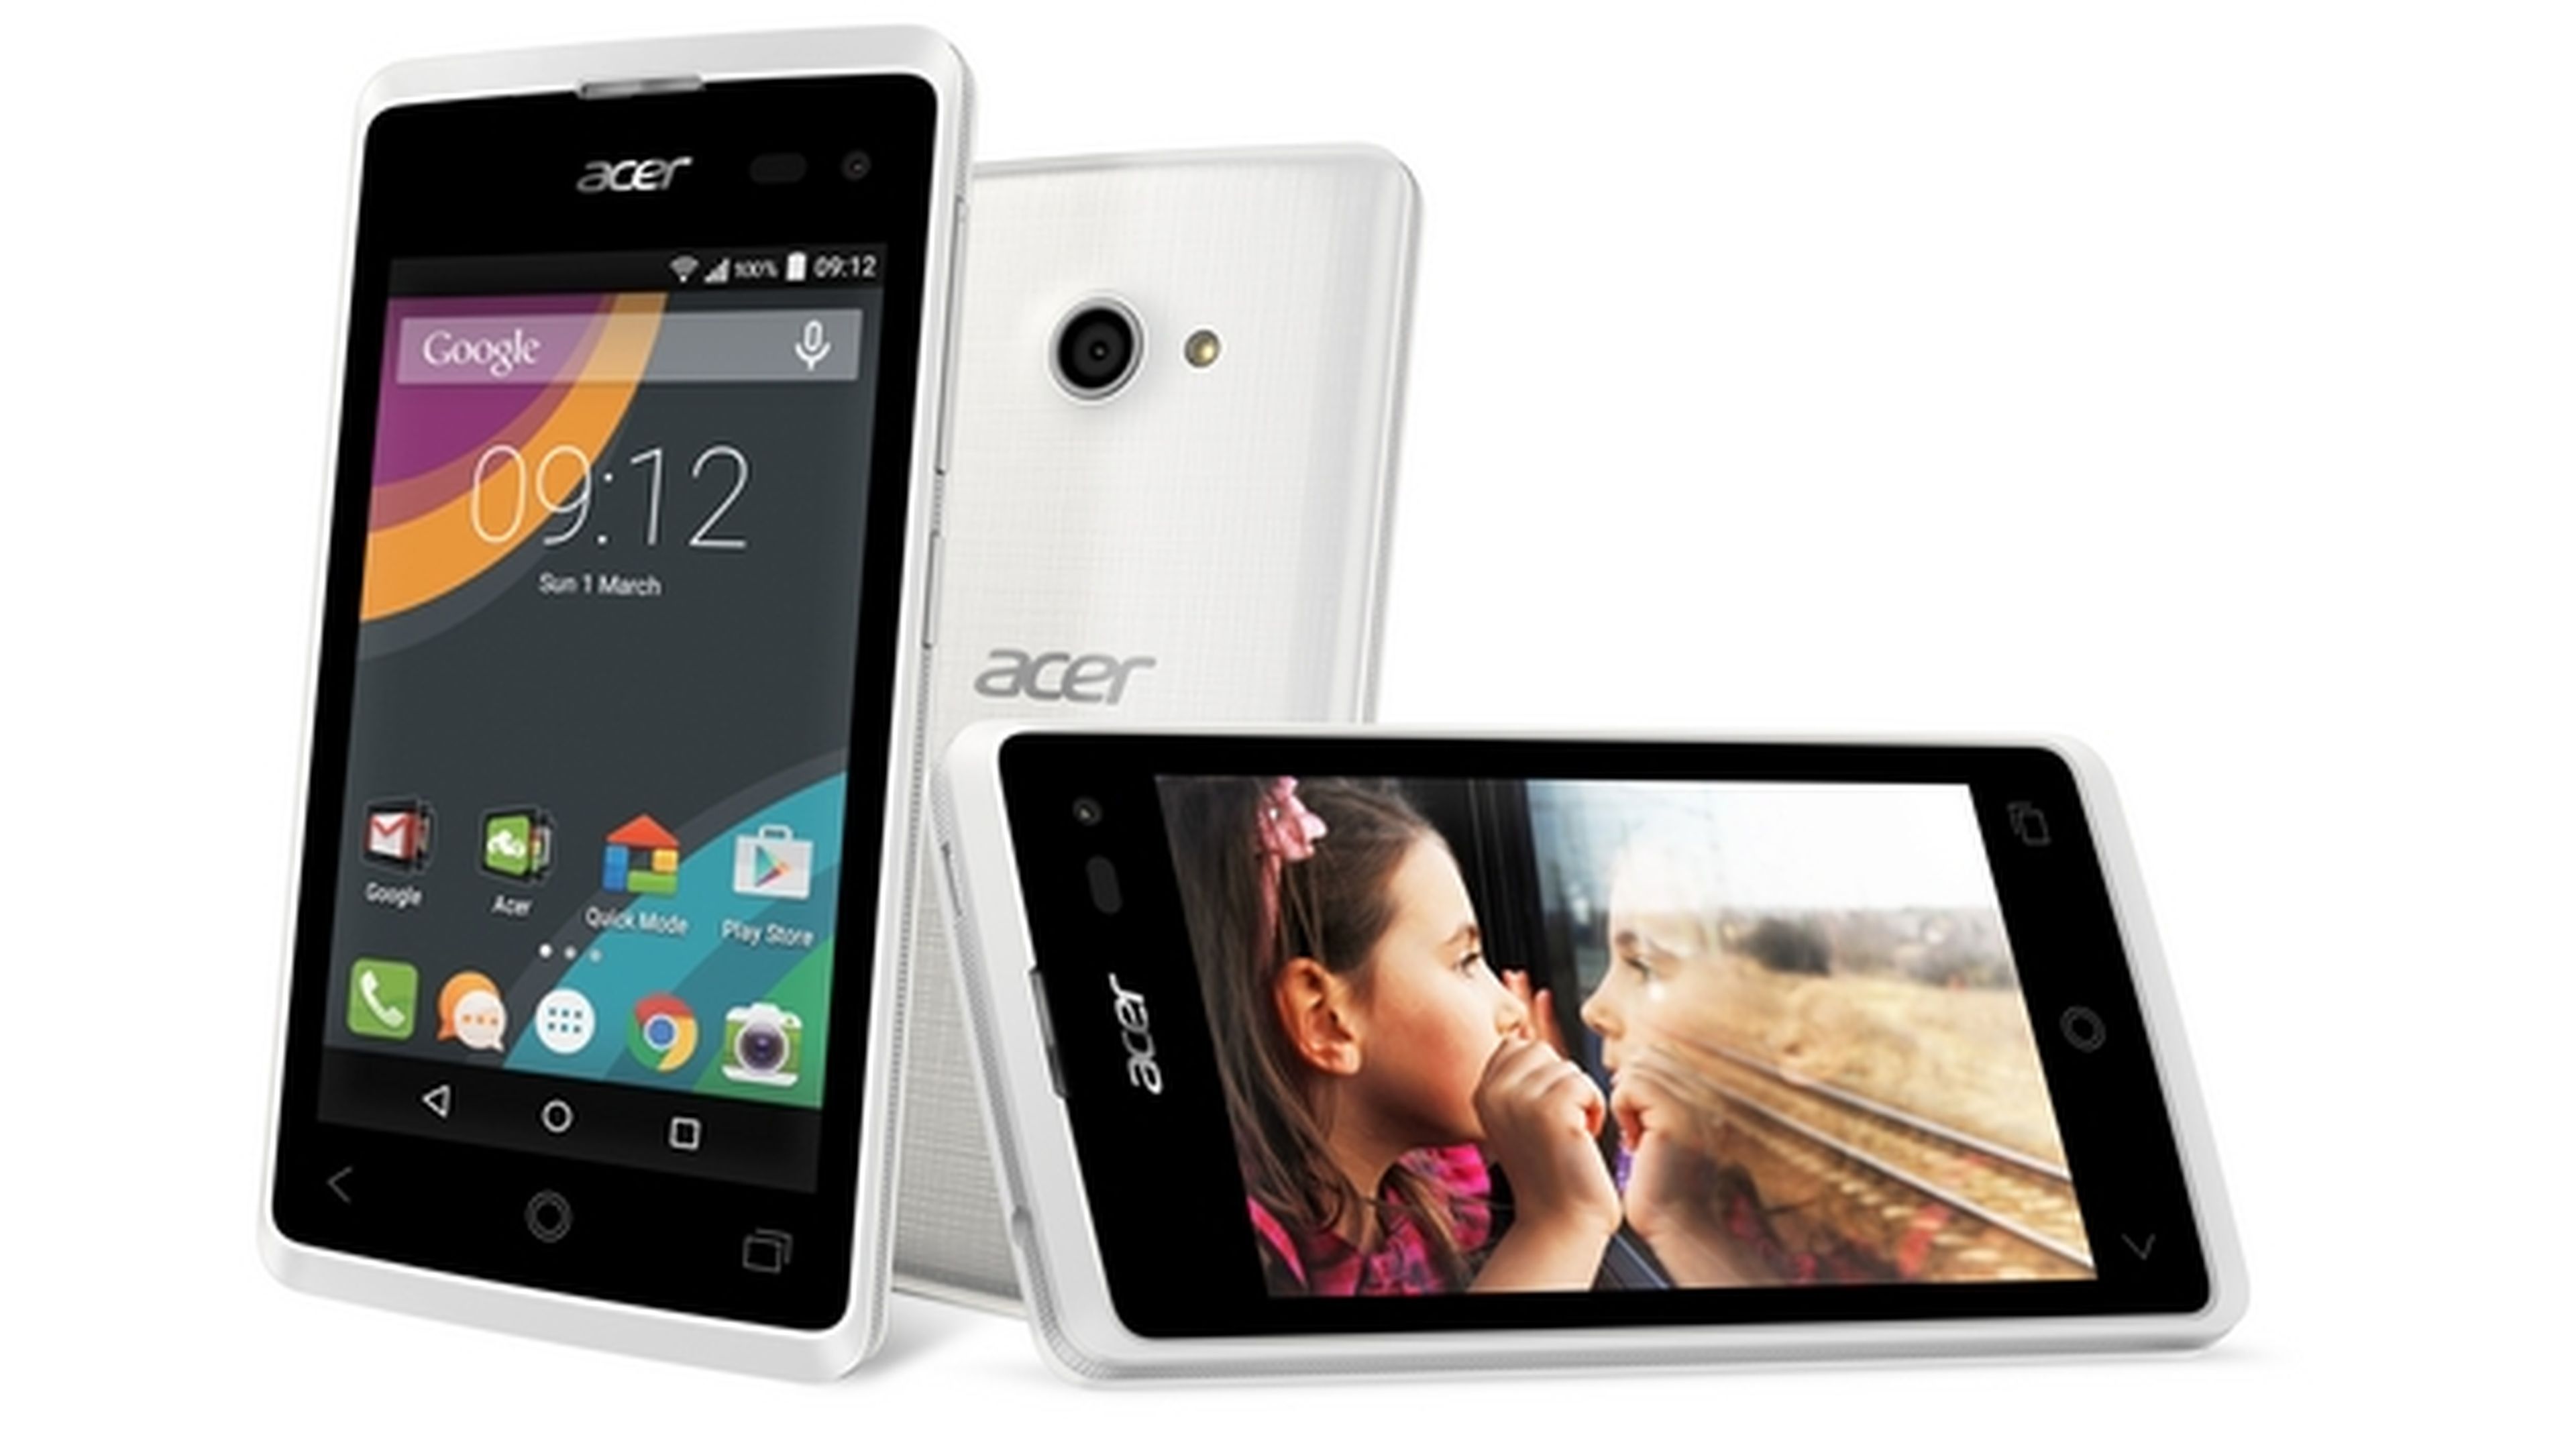 Acer estrena nuevos smartphones Liquid y Jade con Android y Windows Phone 8 en el MWC 2015.